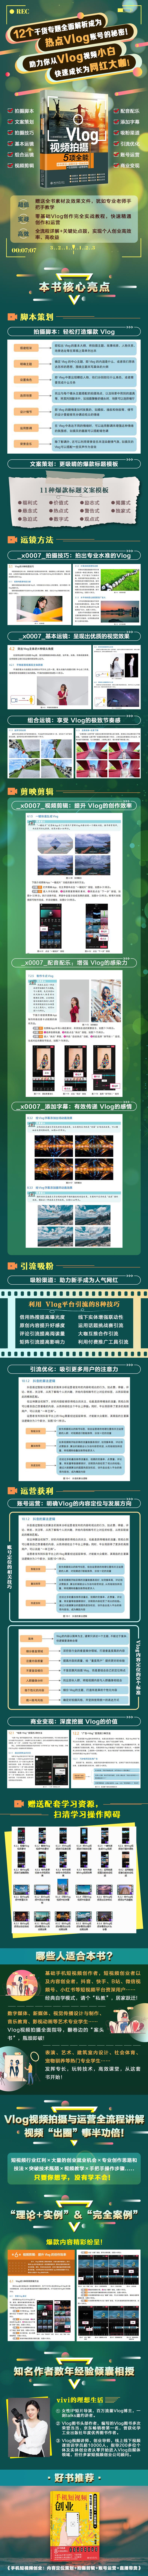 Vlog视频拍摄5项全能：脚本策划+运镜方法+剪映剪辑+引流吸粉+运营获利 vivi的理想生活 著 北京大学出版社